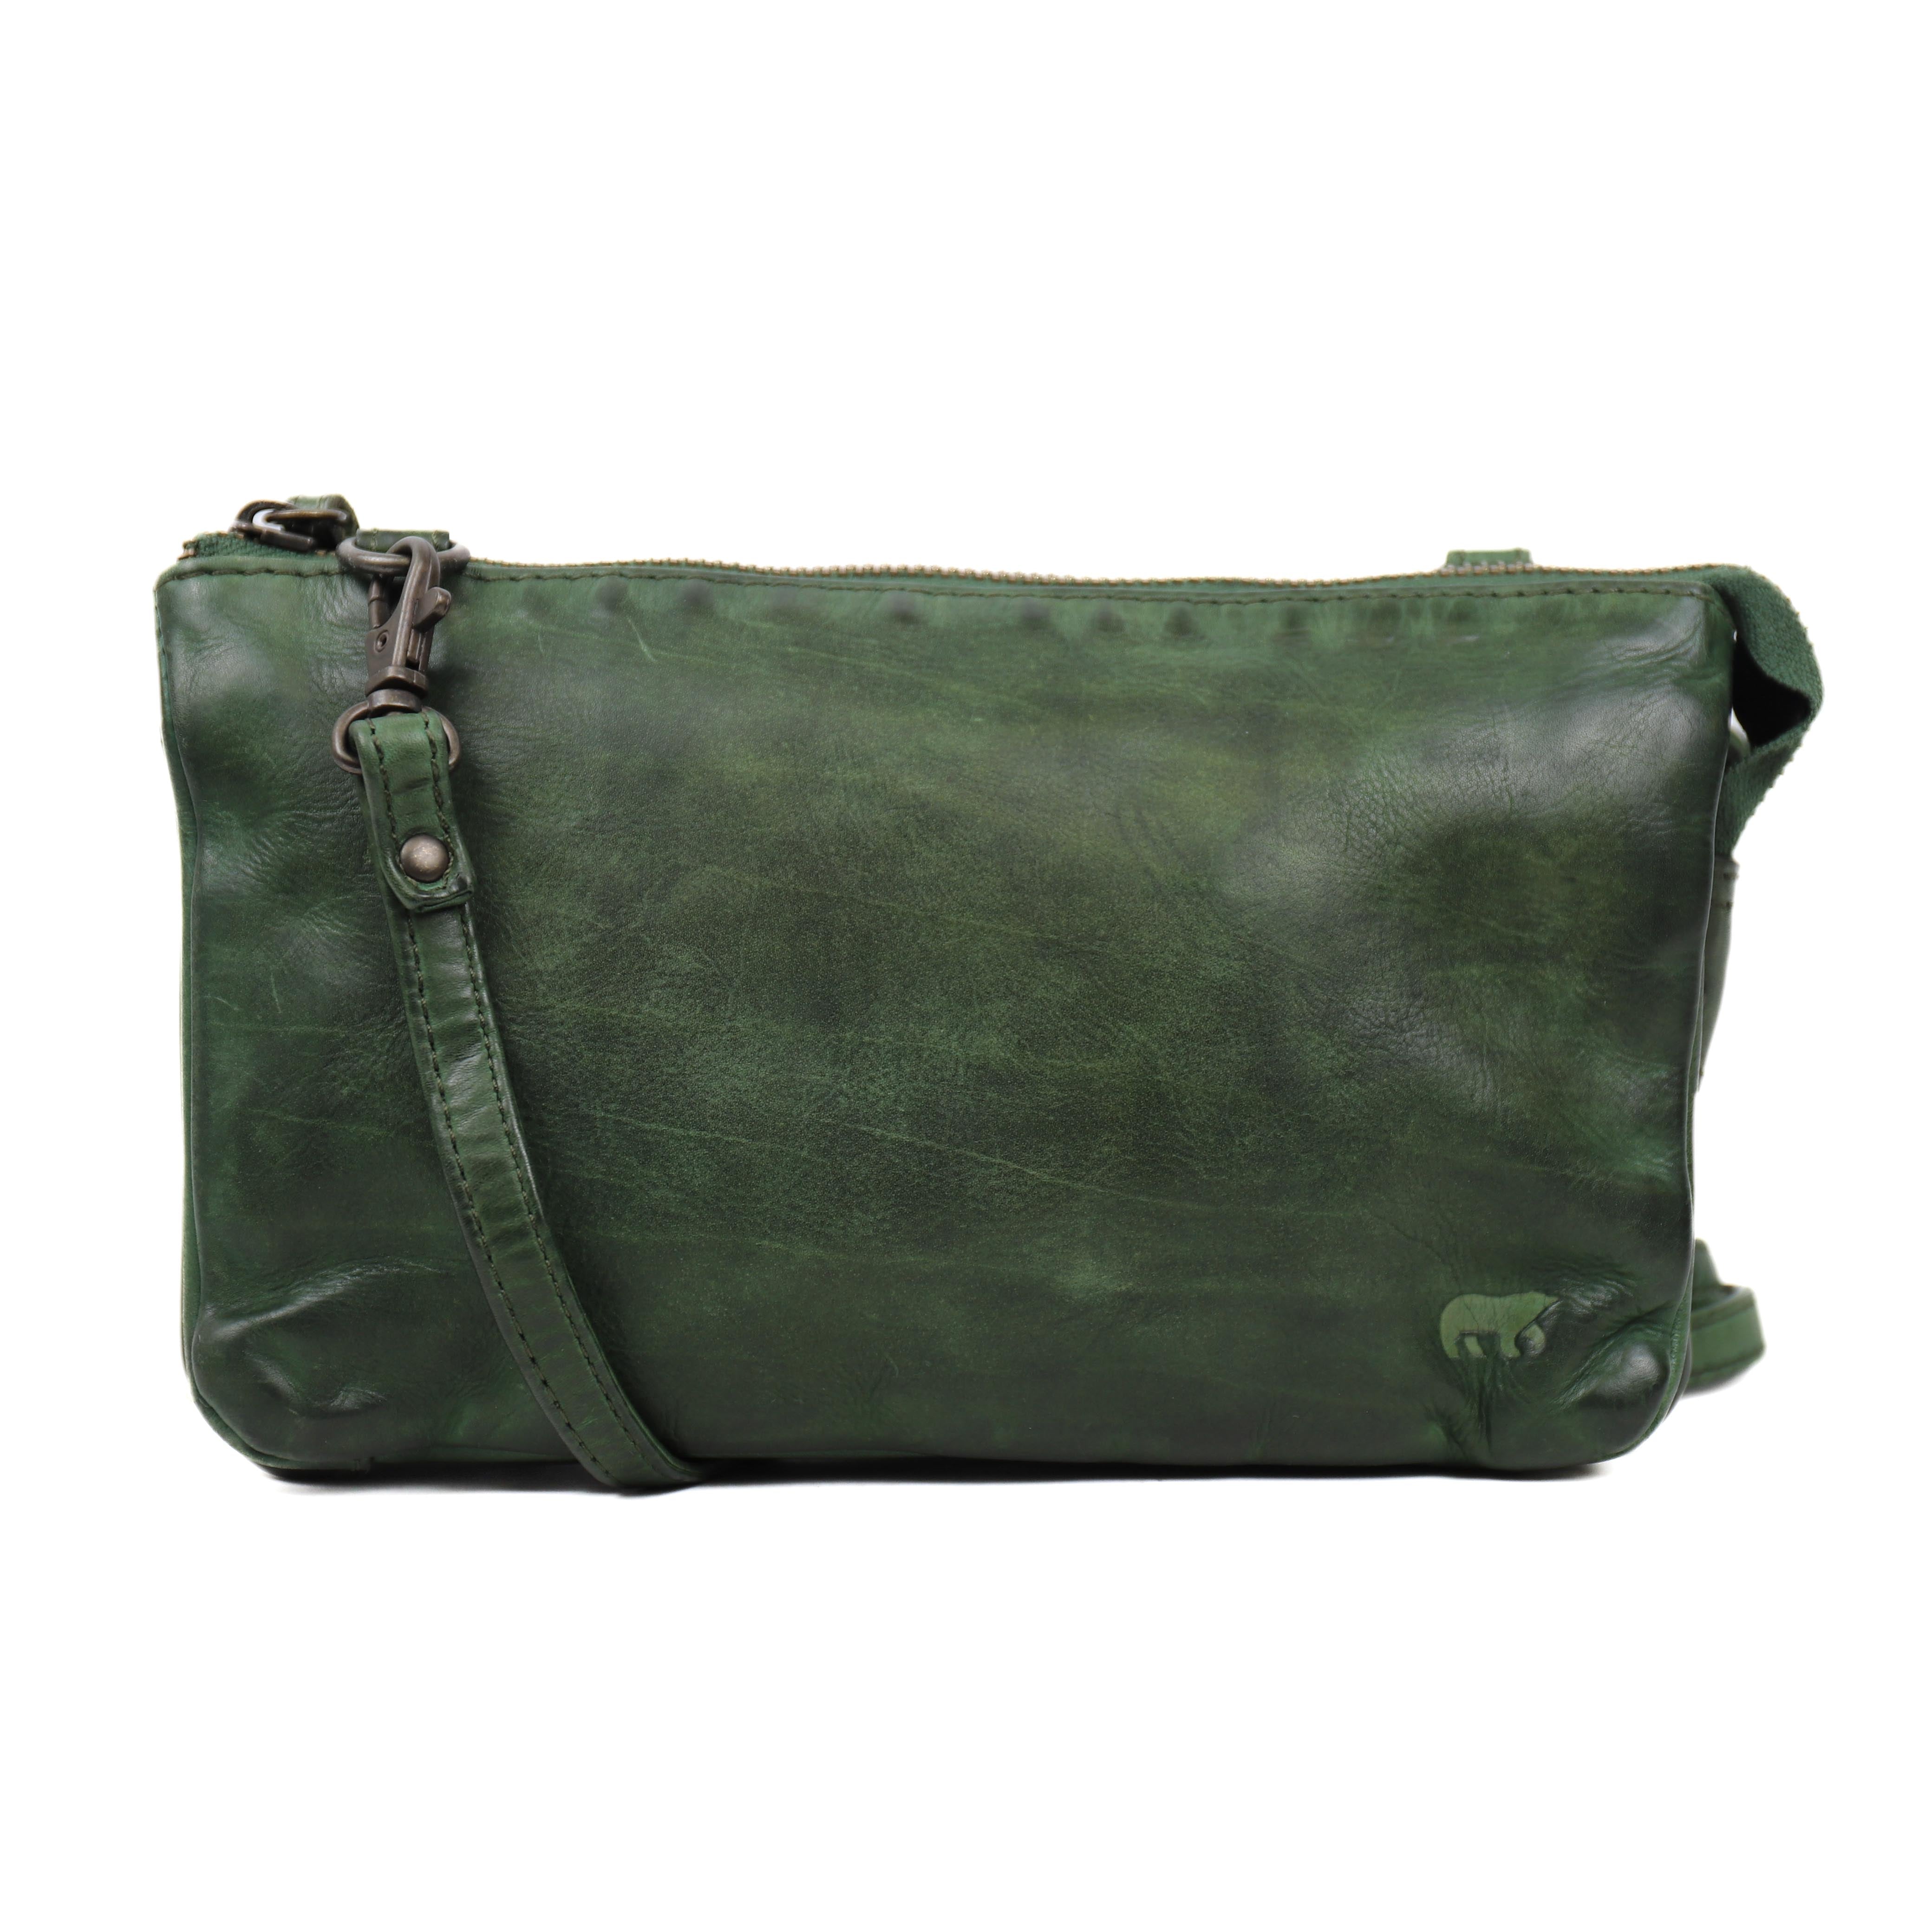 Purse bag 'Uma' green - CL 30996